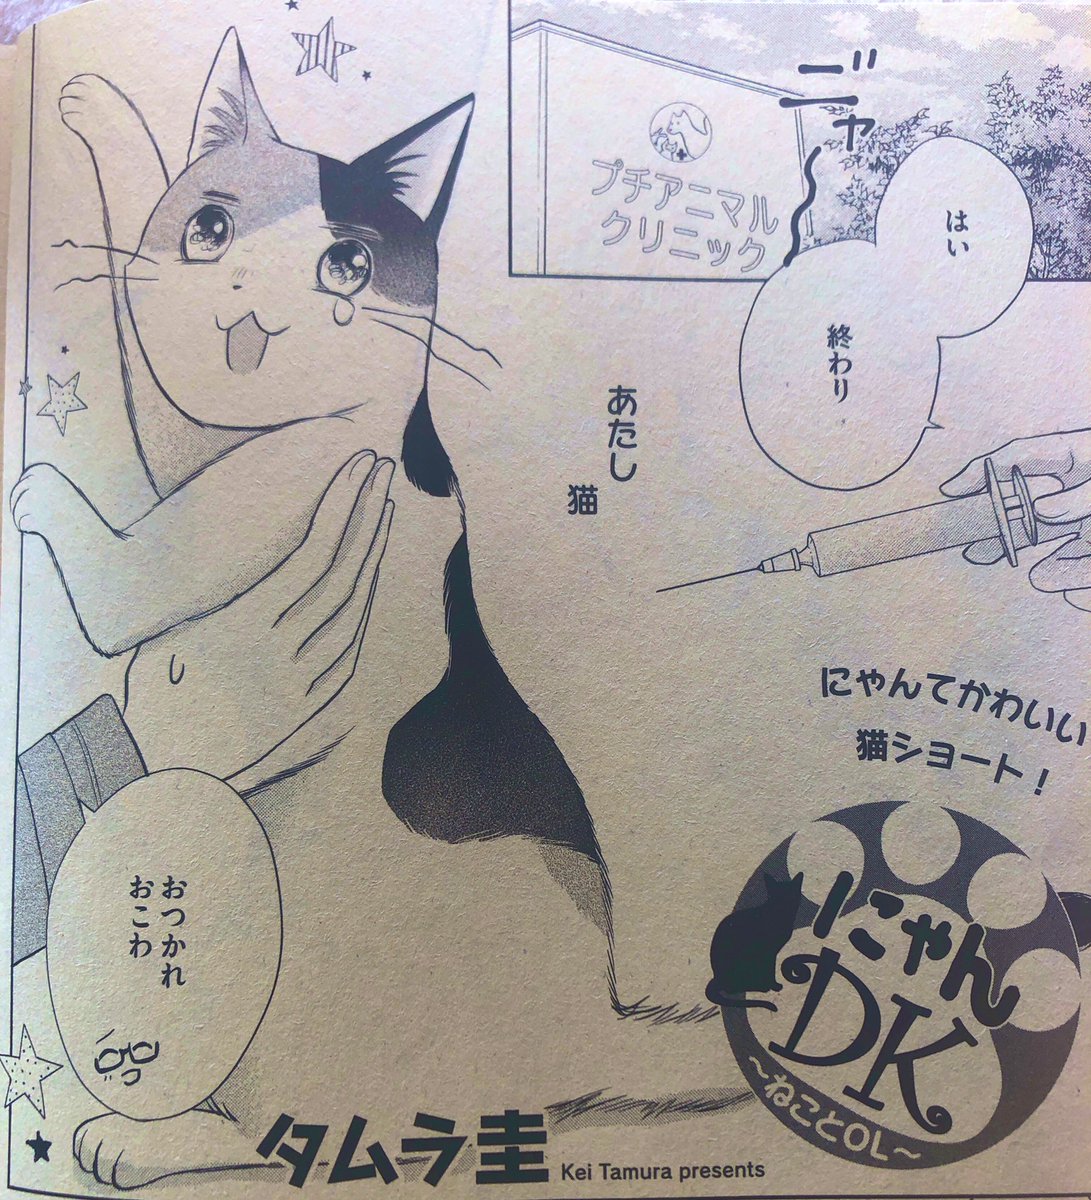 🐾お知らせ🐾
ただ今発売中のプチコミ増刊冬号に猫ショート漫画、にゃんDK掲載して頂いてます!クリニックで運命の出会いが…🐟🐟🐟よろしくお願いします☺️ 